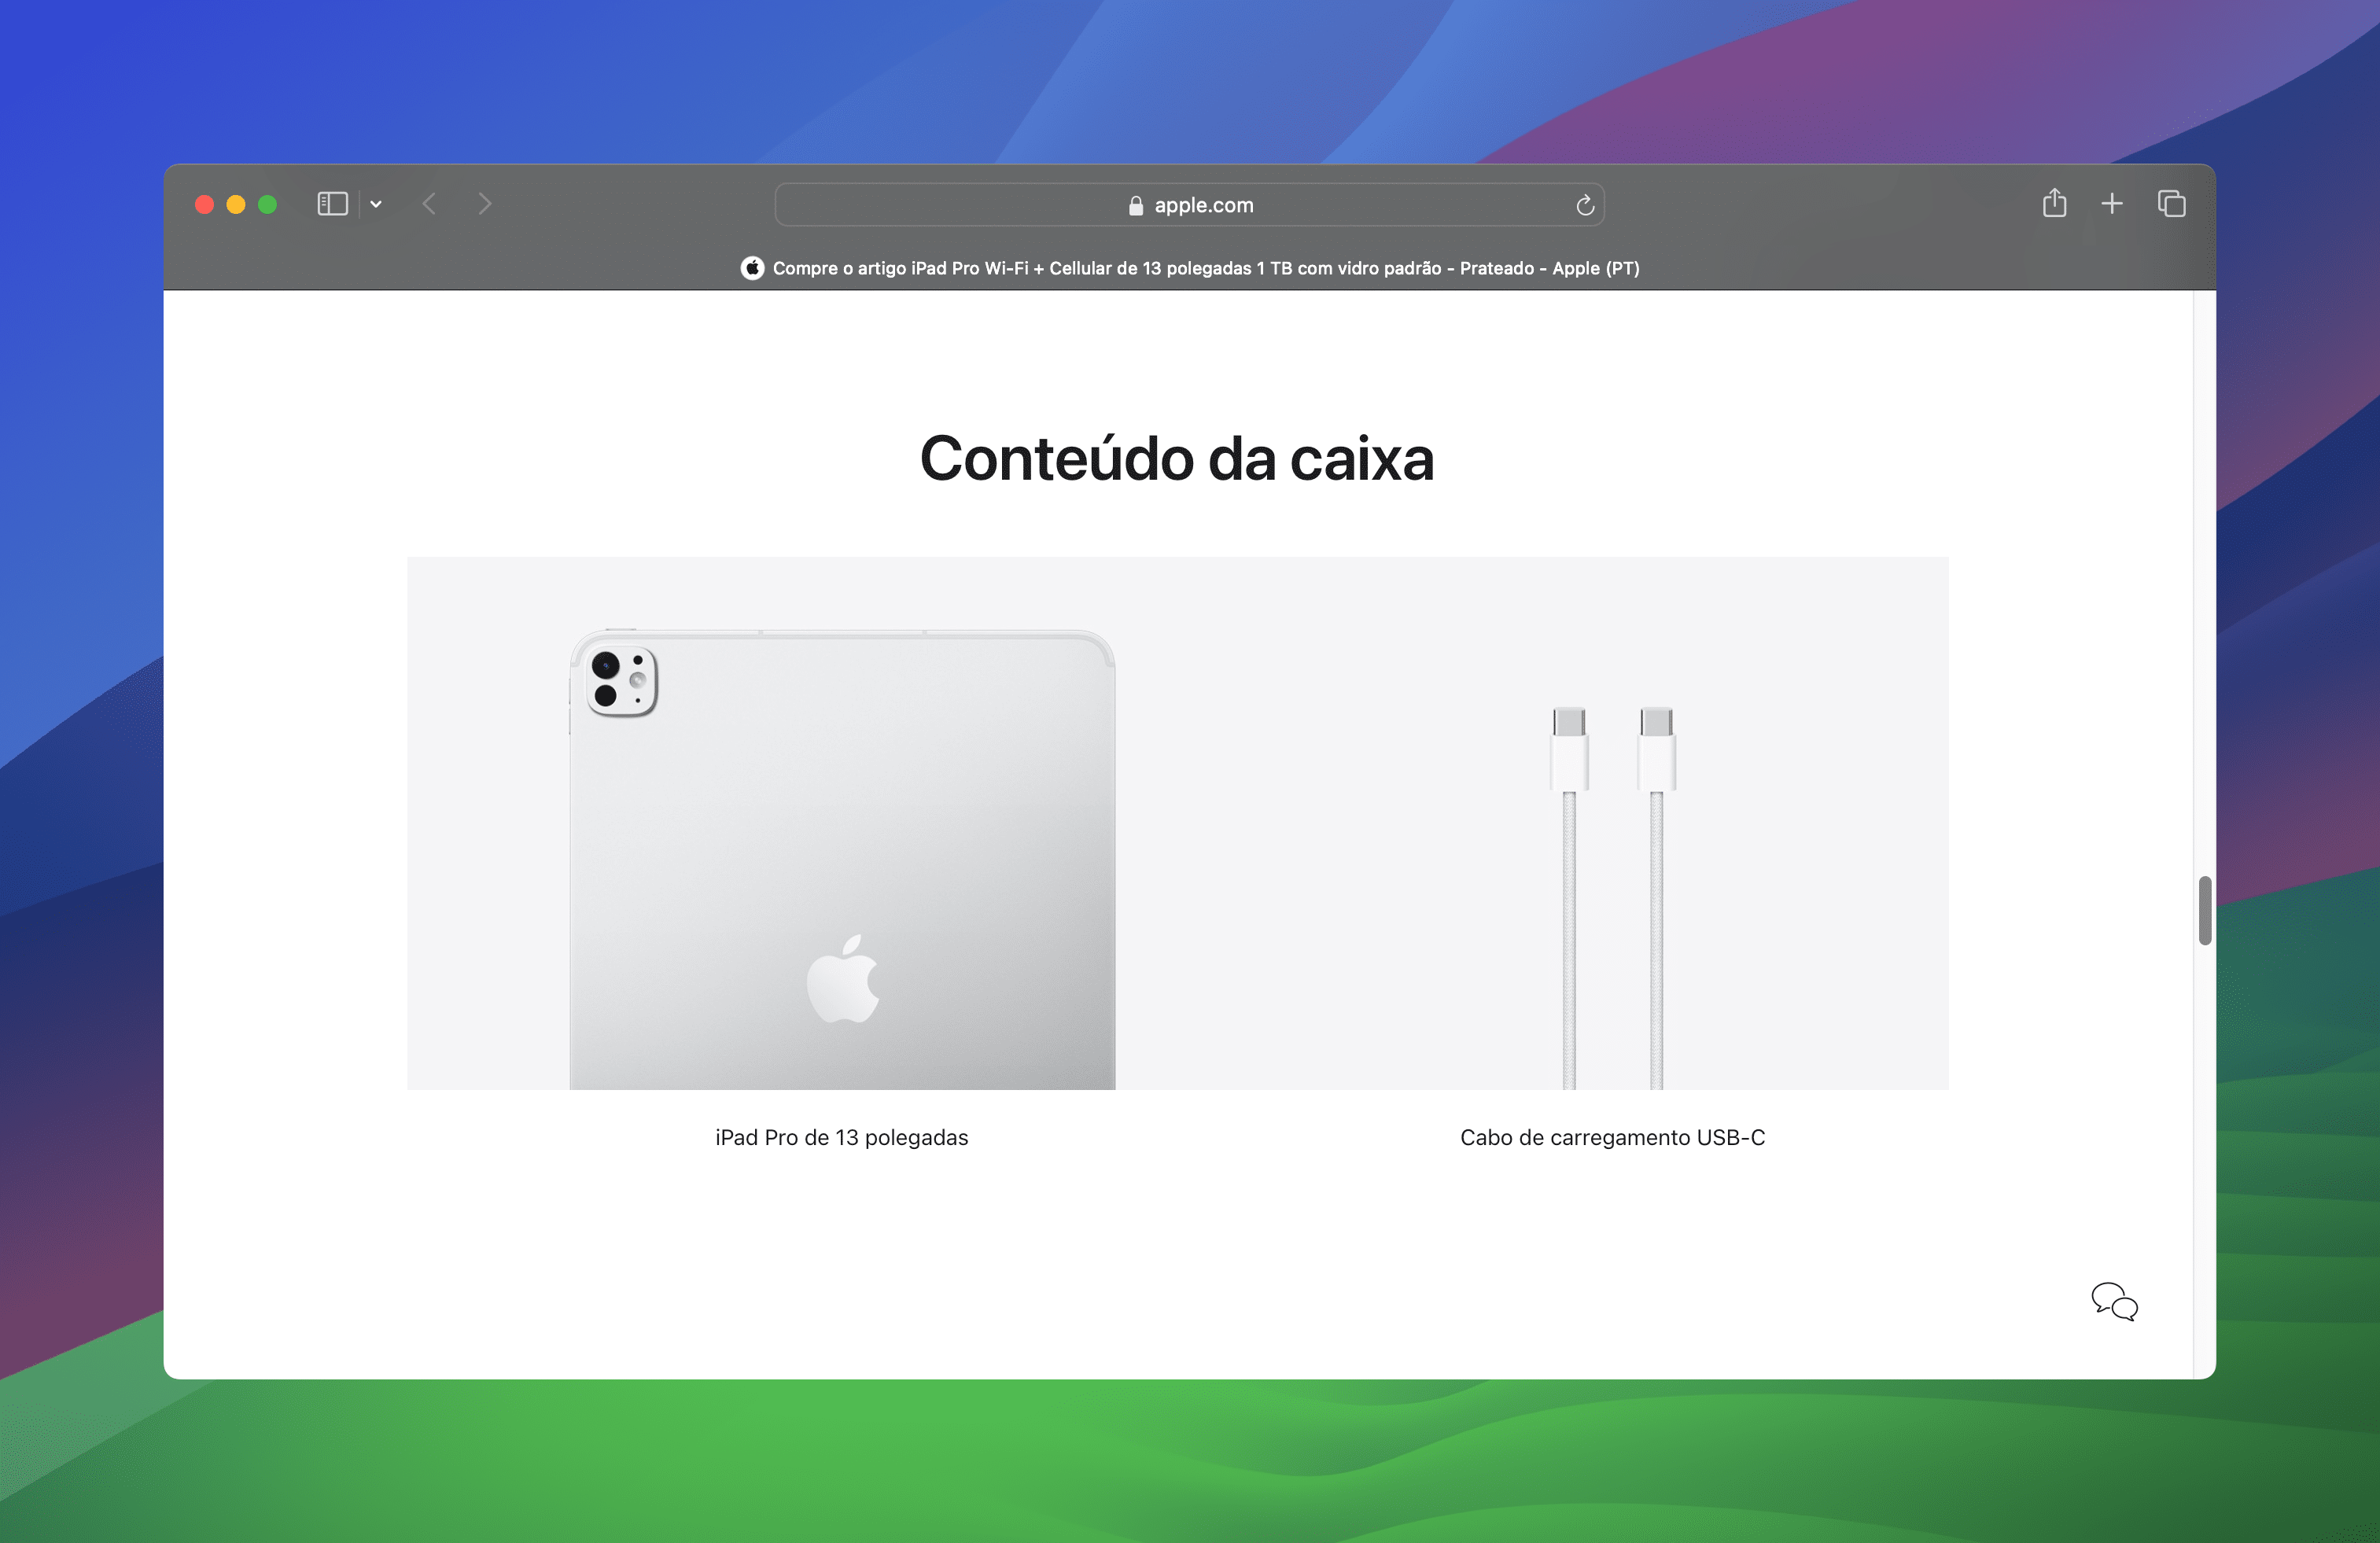 Conteúdo da caixa do novo iPad Pro de 13" (M4) em Portugal